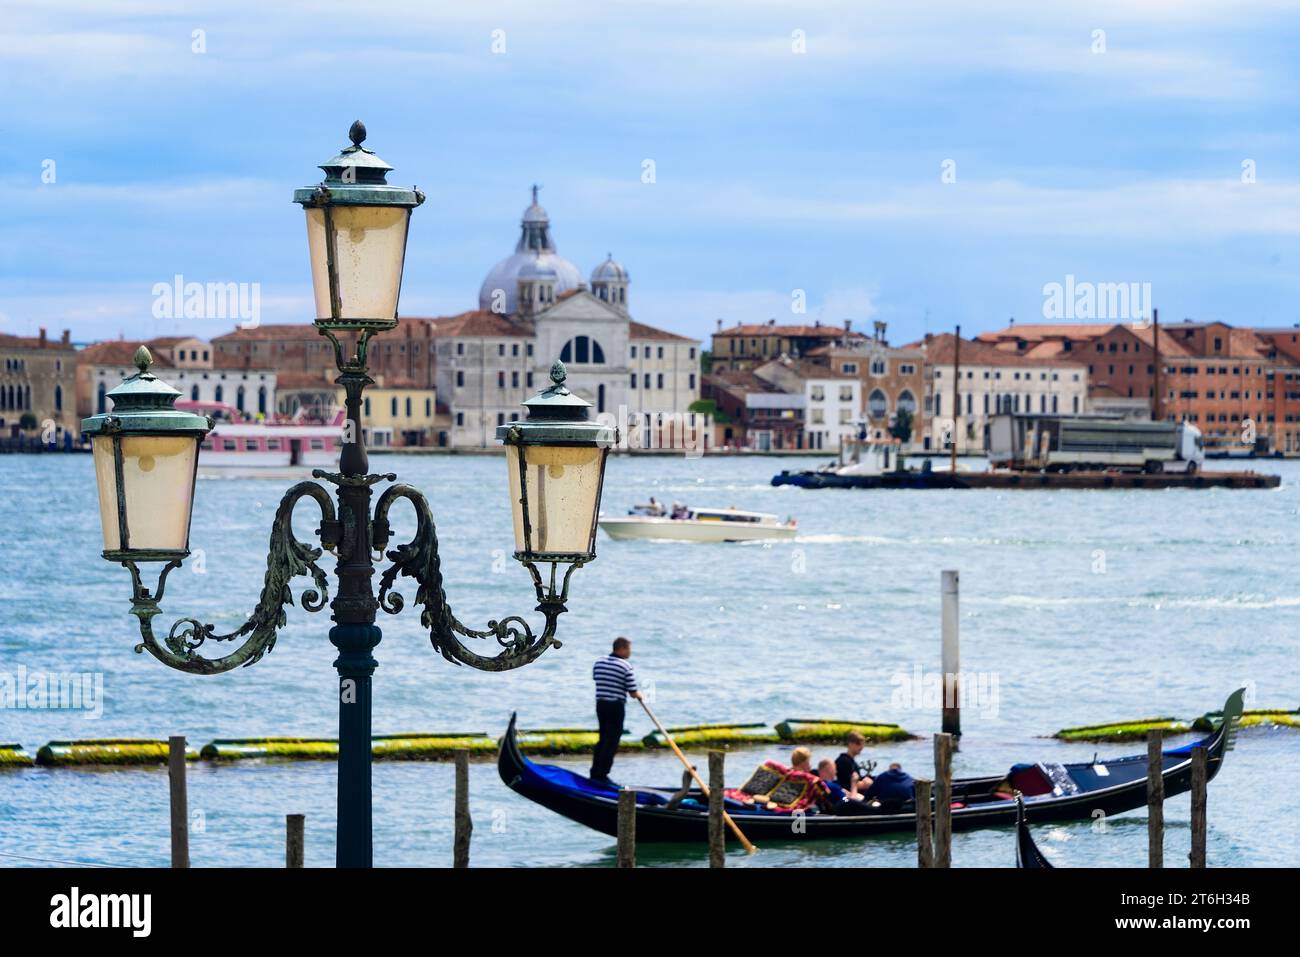 Venedig, Italien - 14. Juni 2016: Gondelfahrt durch die Hauptwasserstraße von Venedig, Italien. Stockfoto